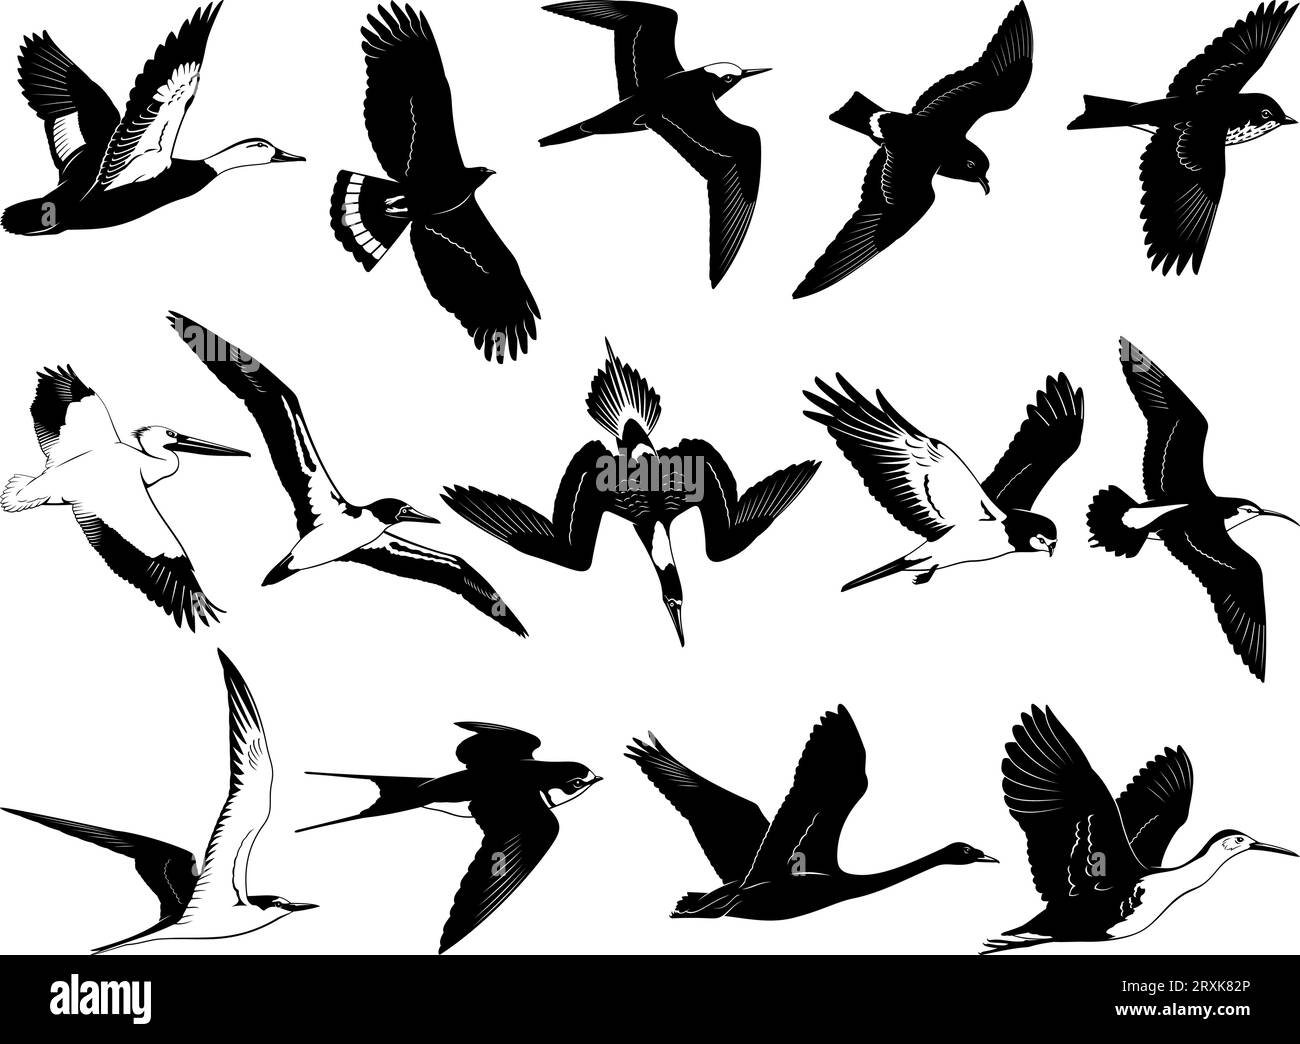 Fliegende Vögel Silhouetten. Schwarz-weiß-Schablonen-Vektorklipseln isoliert auf weiß. Stock Vektor